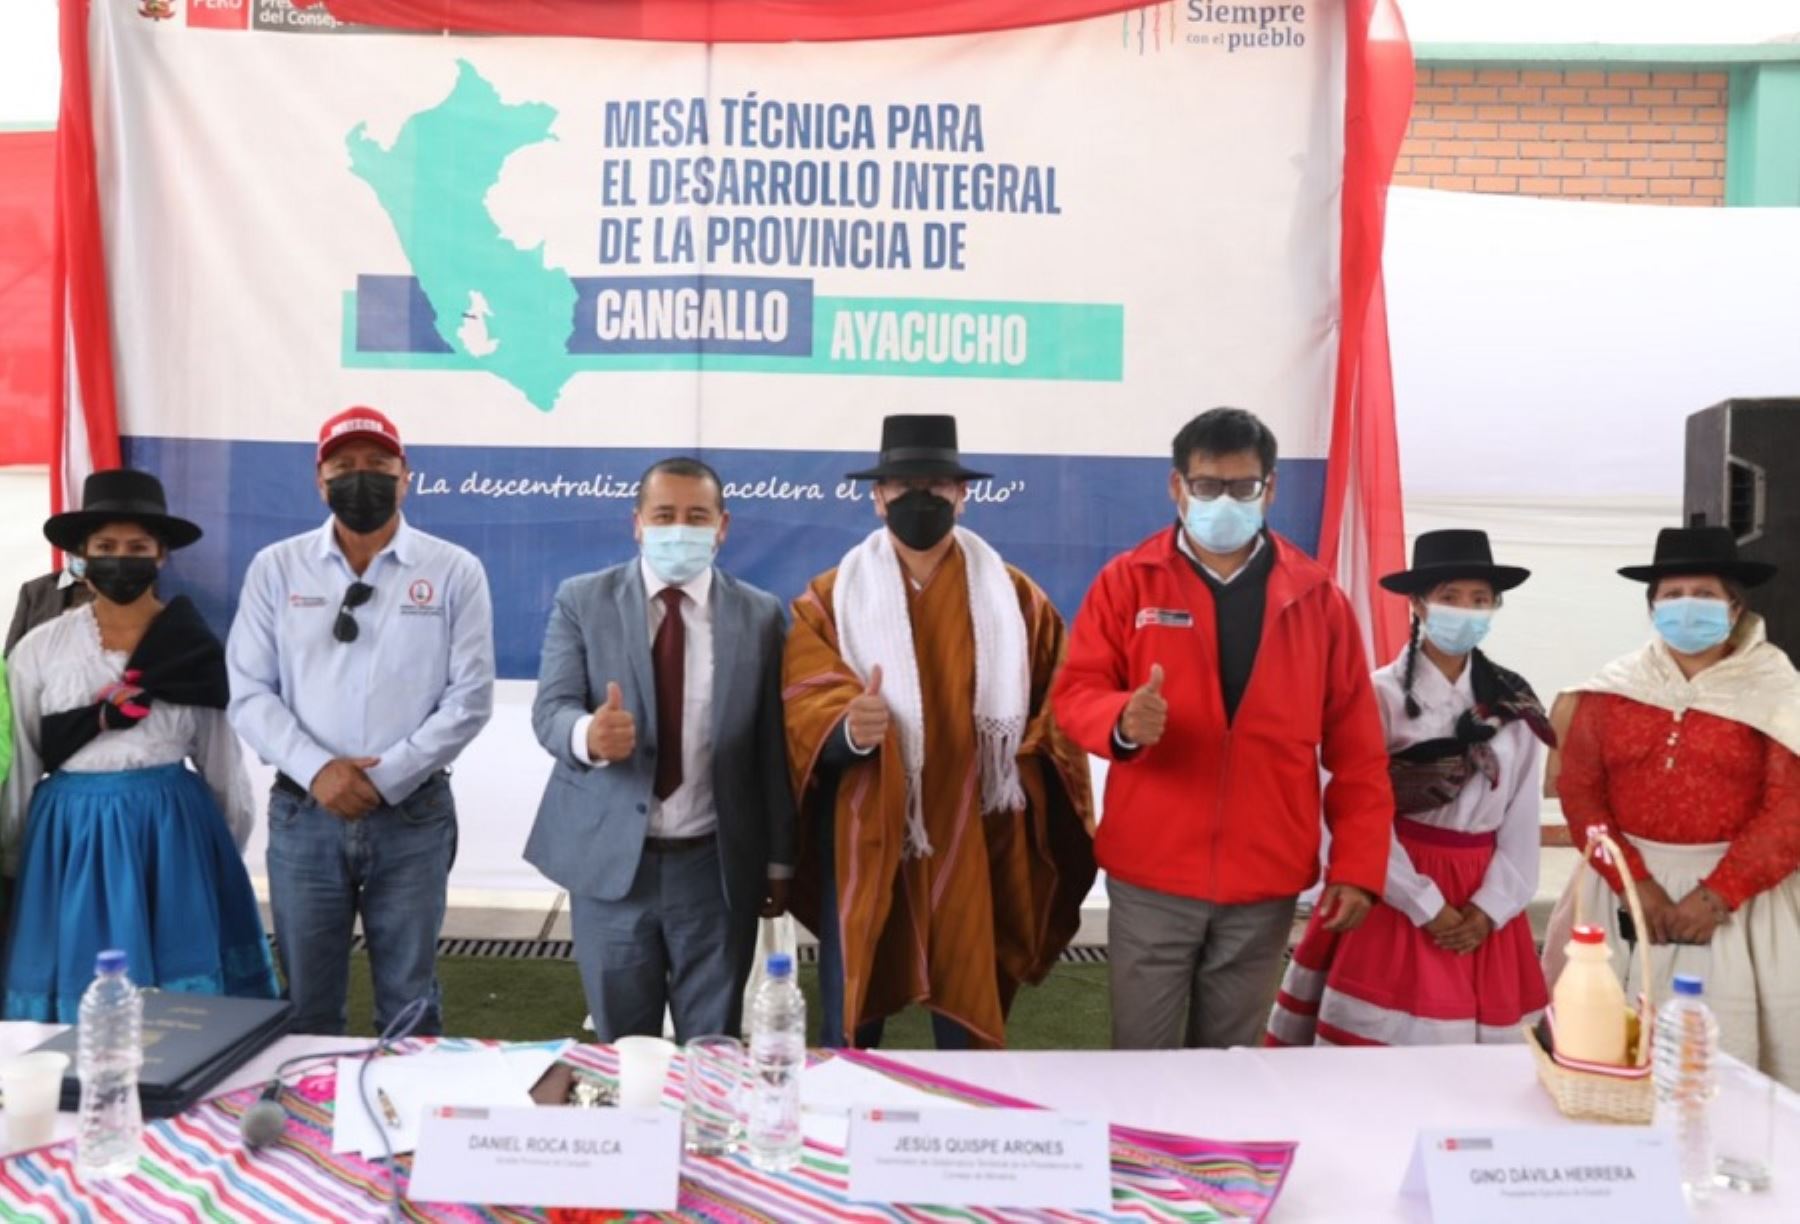 El Seguro Social de Salud invertirá más de S/ 120 millones en la construcción de dos hospitales Bicentenario y ejecución del proyecto de mejoras de los servicios de salud en Ayacucho, lo cual beneficiará a cientos de asegurados de esta región del sur del país.